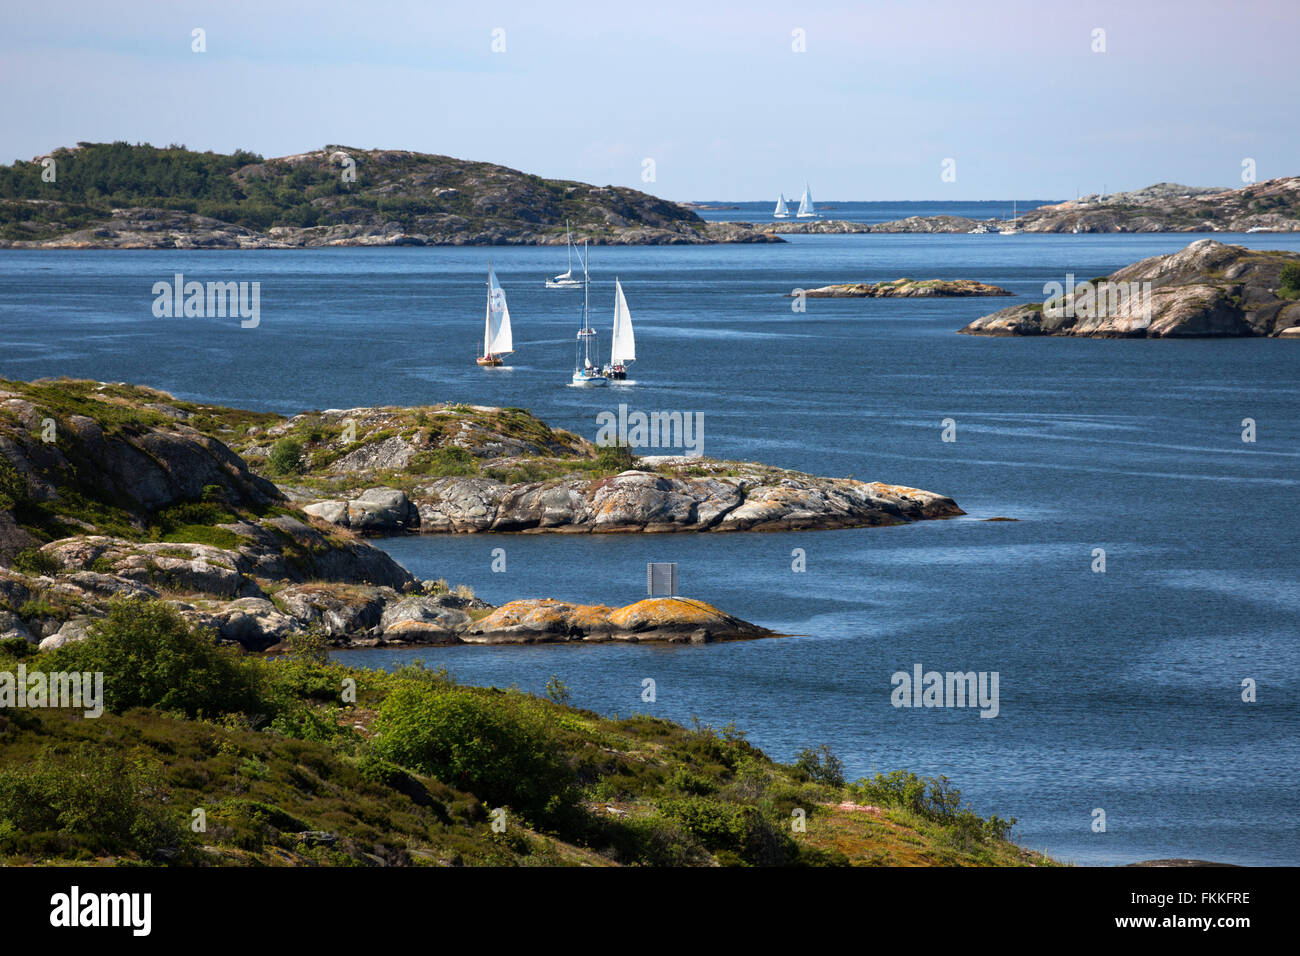 Yachts à voile par archipel, près de Marstrand, Suède, au sud-ouest de la Suède, Scandinavie, Europe Banque D'Images